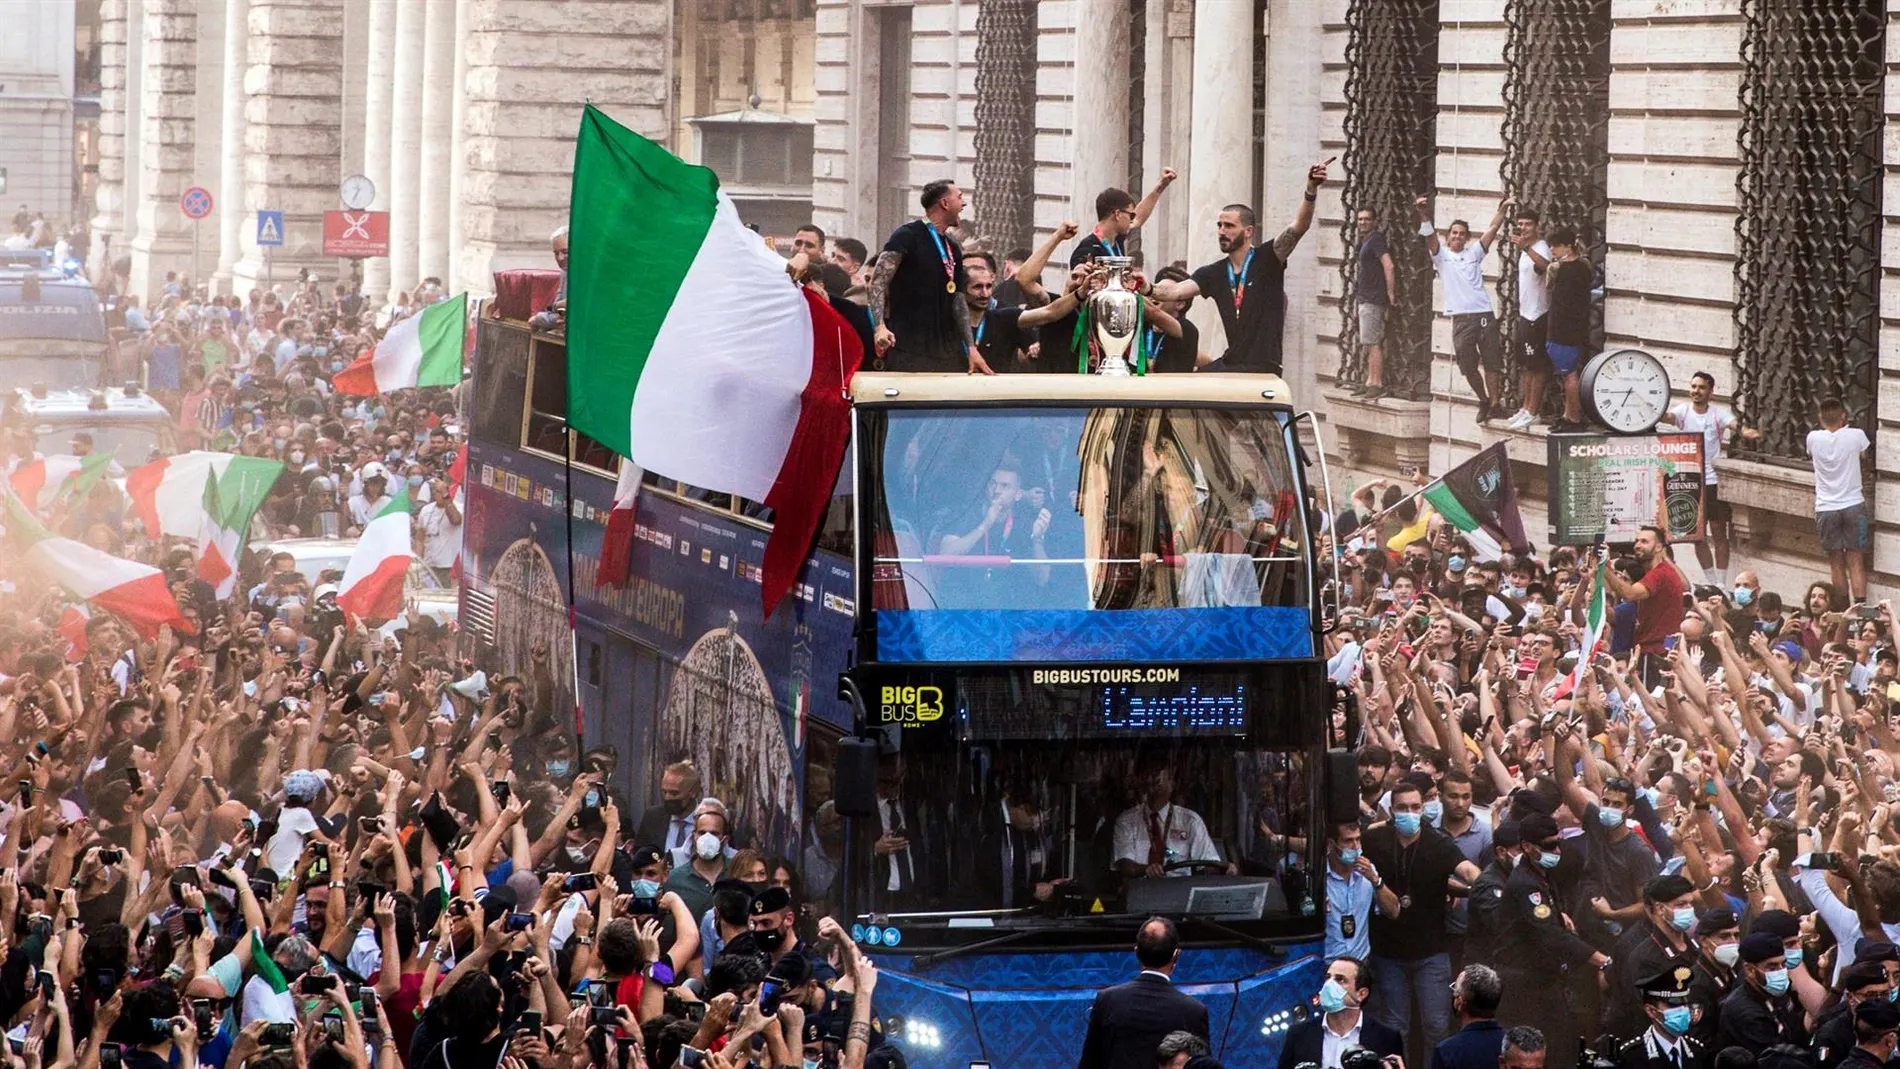 La selección italiana recorre Roma para celebrar la Eurocopa y Chiellini dedica el triunfo al fallecido Davide Astori